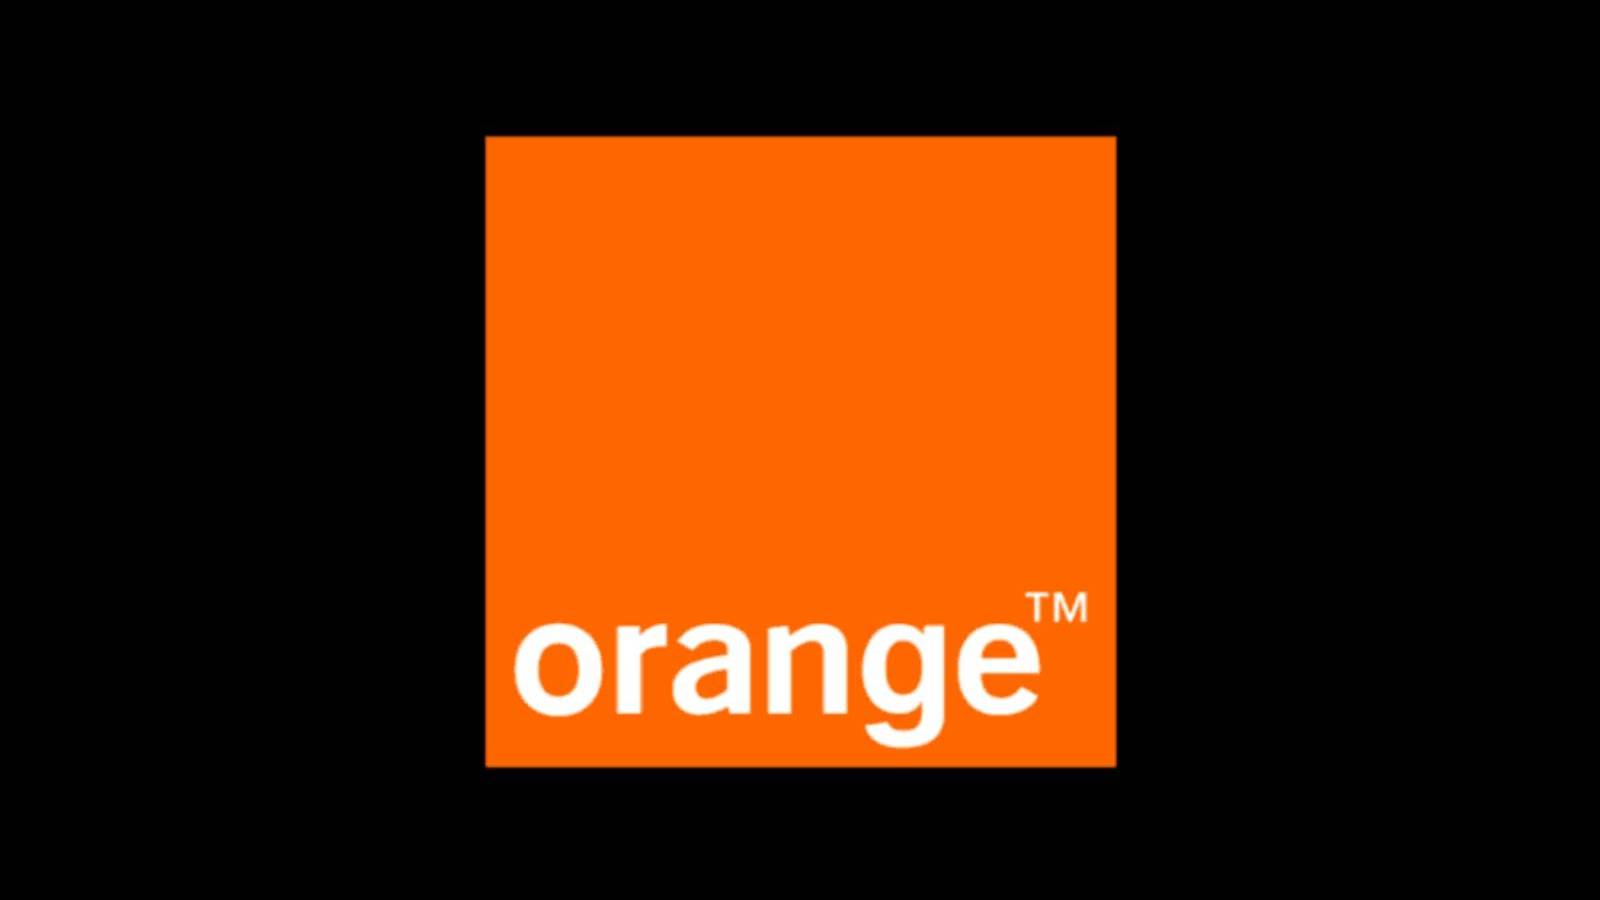 Orange Ofera Gratuit Saptamanal Aceste Beneficii Clientilor, ce Poti Primi